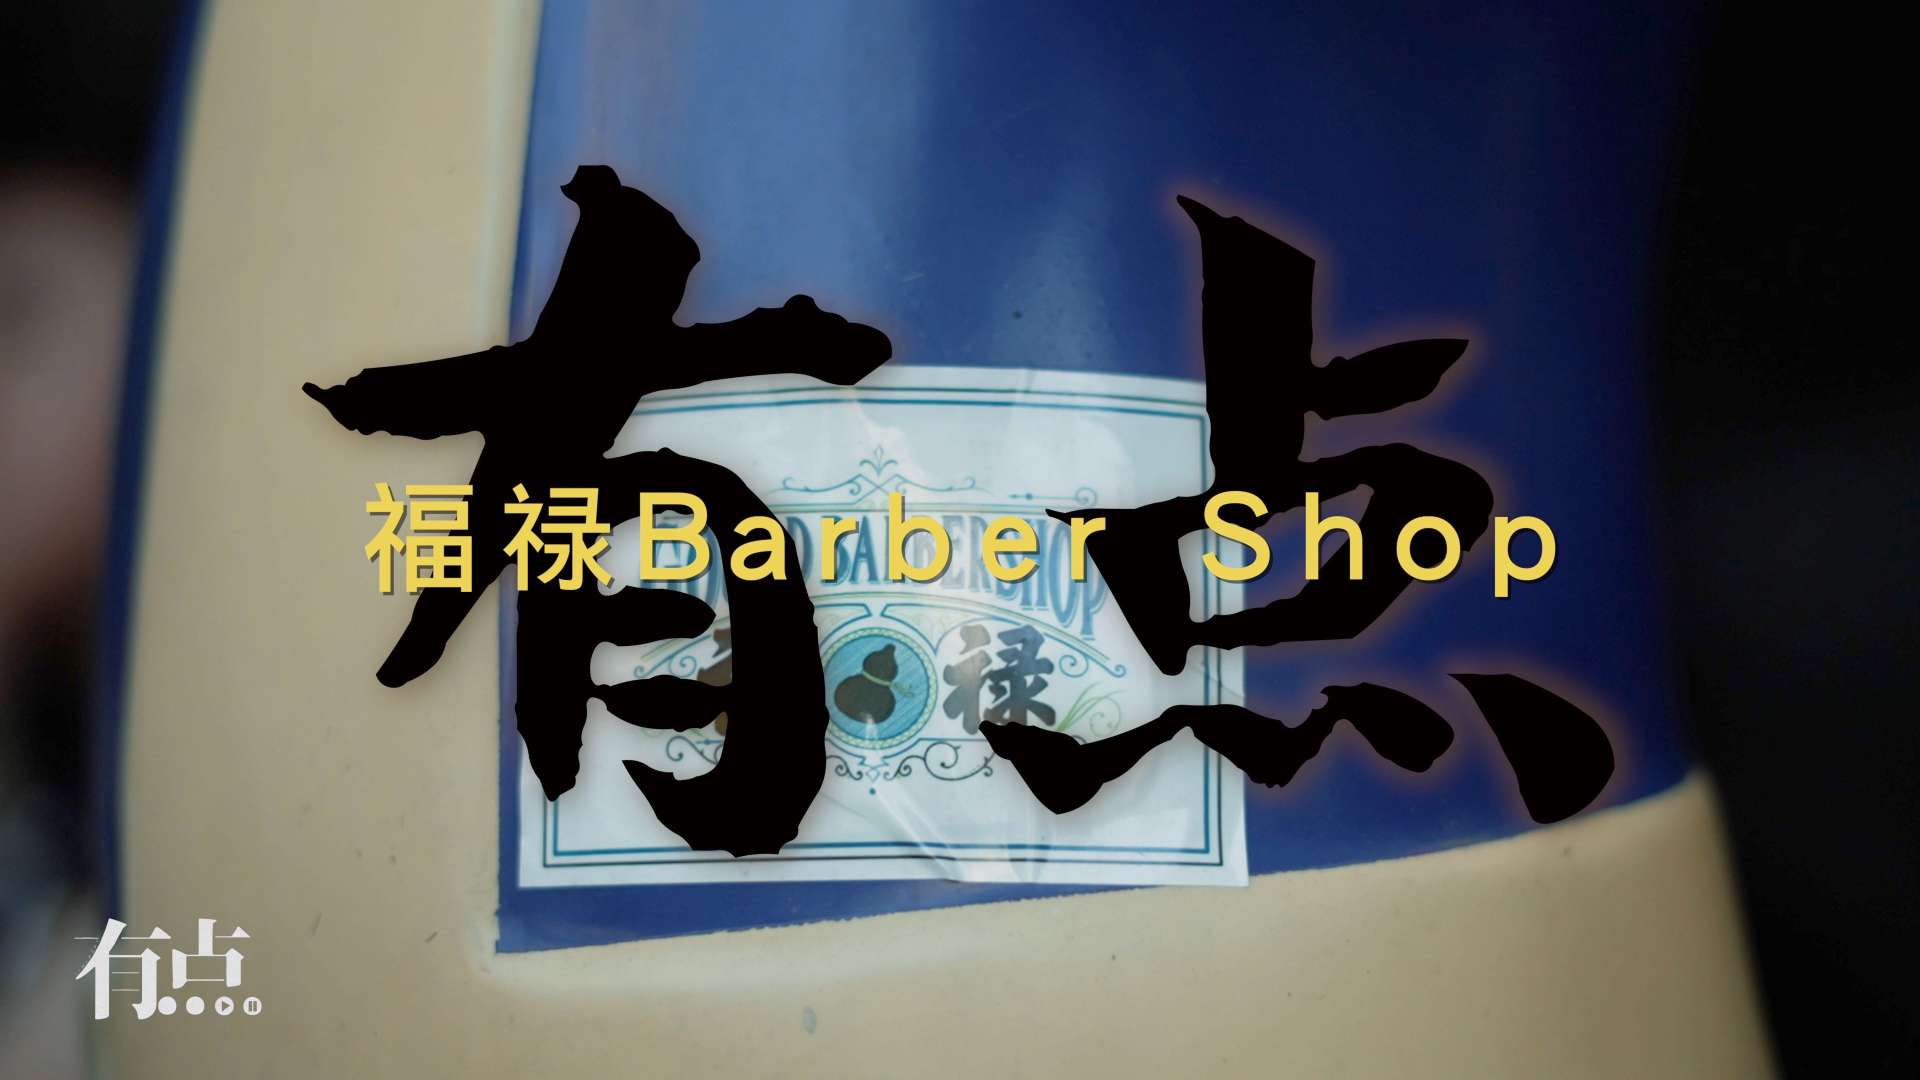 有点纪录｜商业人物纪录—福禄barbershop｜诺哥 阿翔